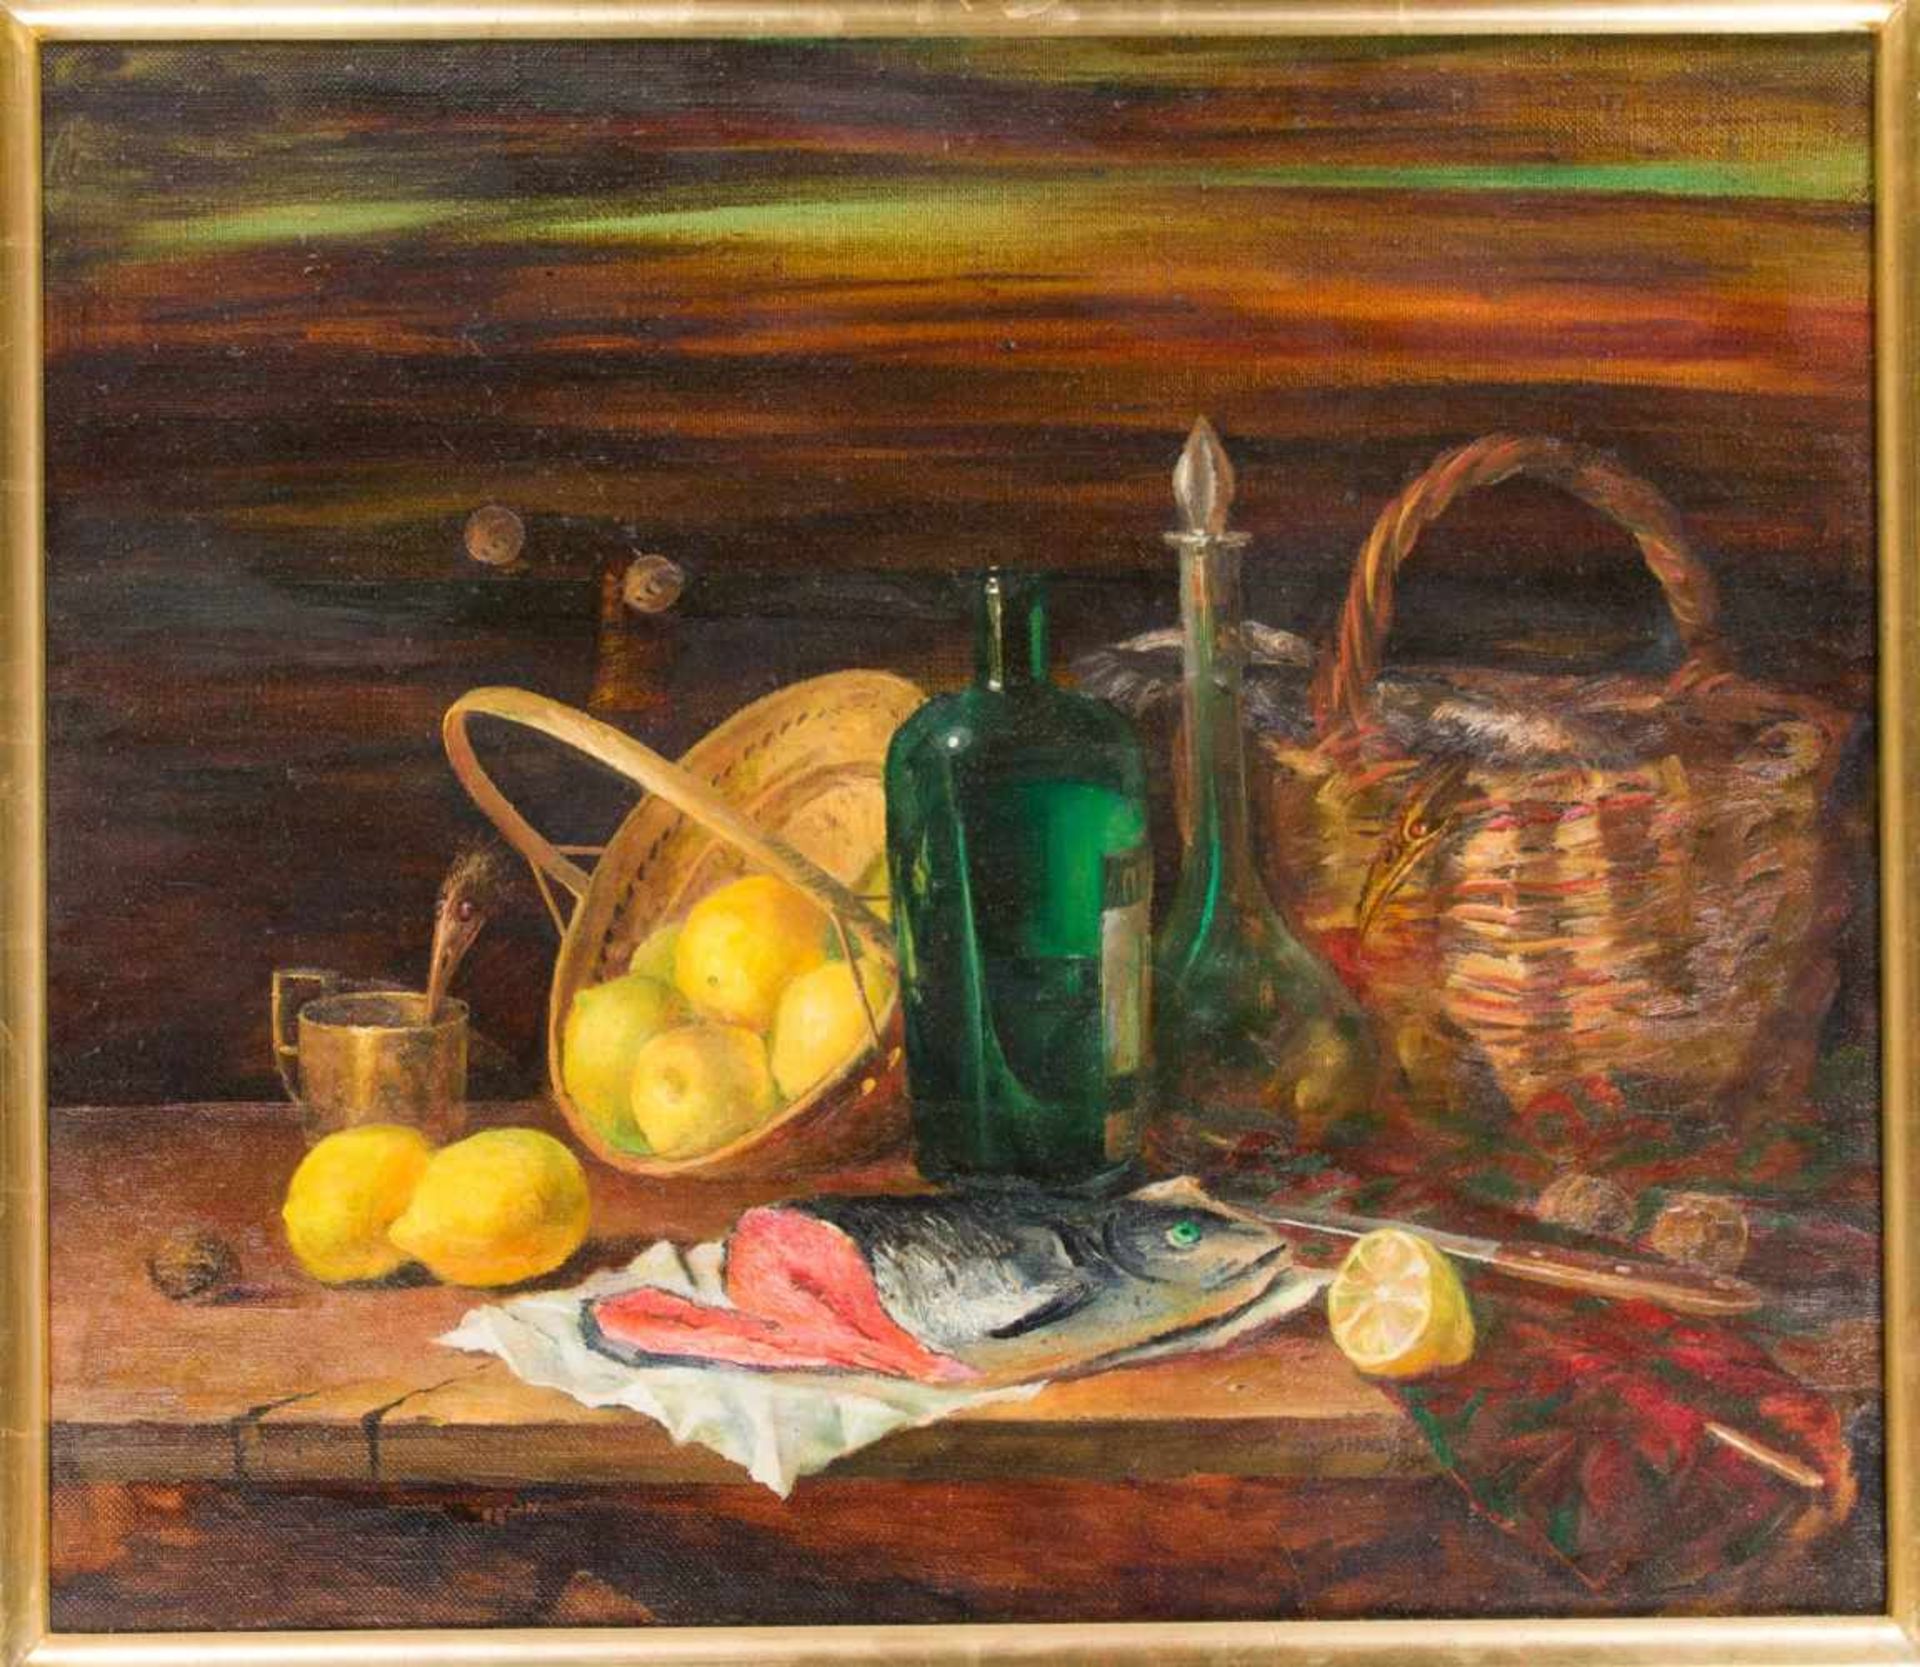 Vladimir Pyzankow (*1950), russischer Maler, Stillleben mit Lachs, Zitronen und Gefäßen,Öl auf Lwd.,